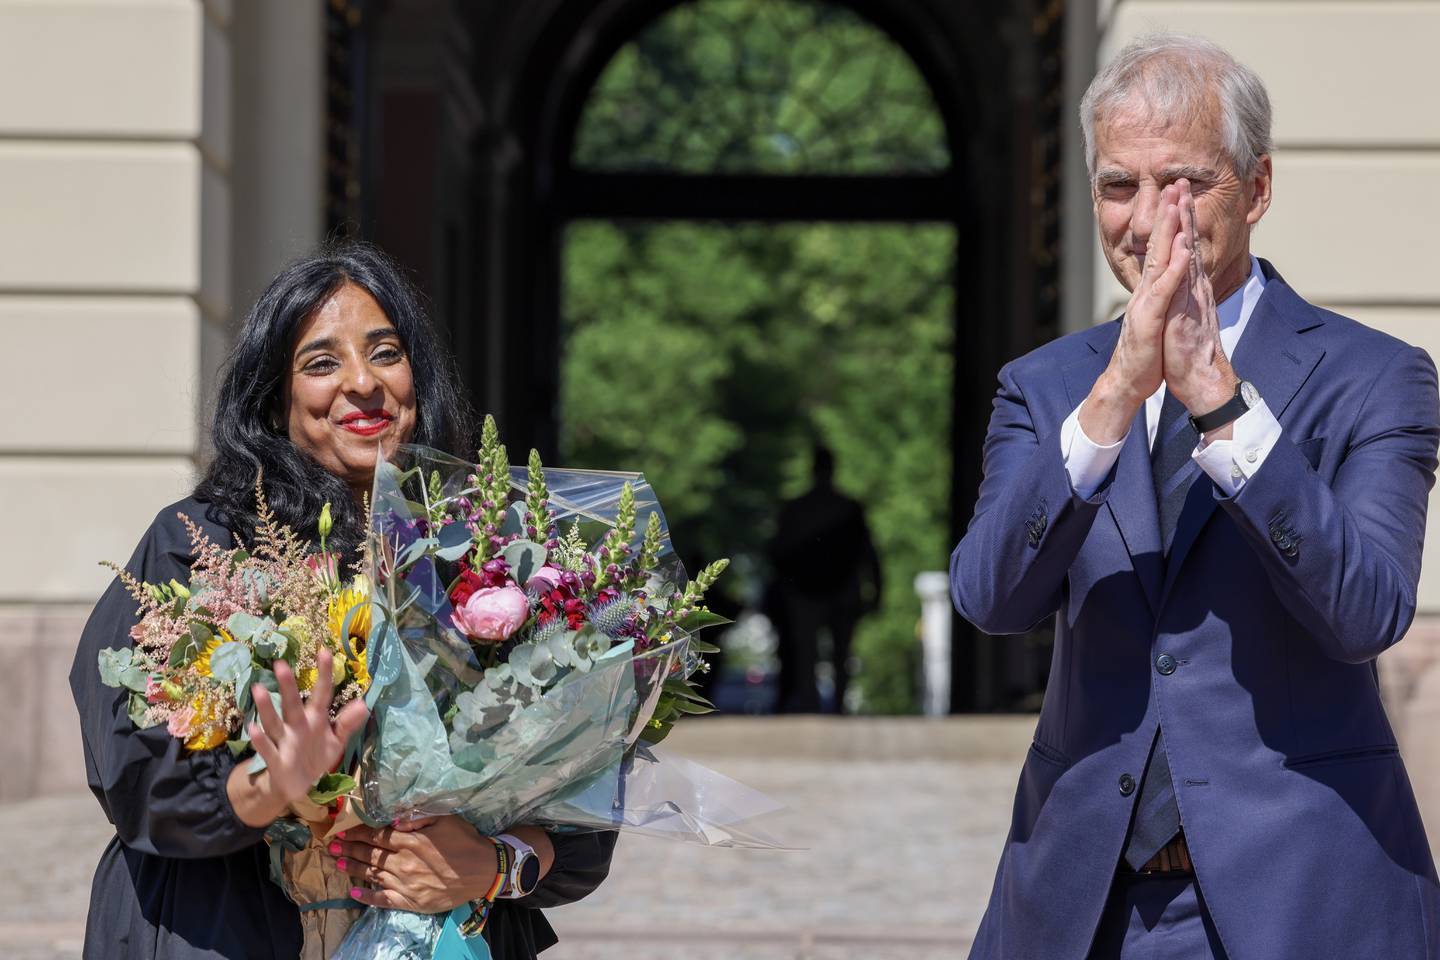 Lubna Jaffery sammen med statsminister Jonas Gahr Støre etter han presenterte henne som ny kultur- og likestillingsminister onsdag 28. juni. Hun står med blomster og smiler, mens Støre har hendene foran ansiktet og klapper.